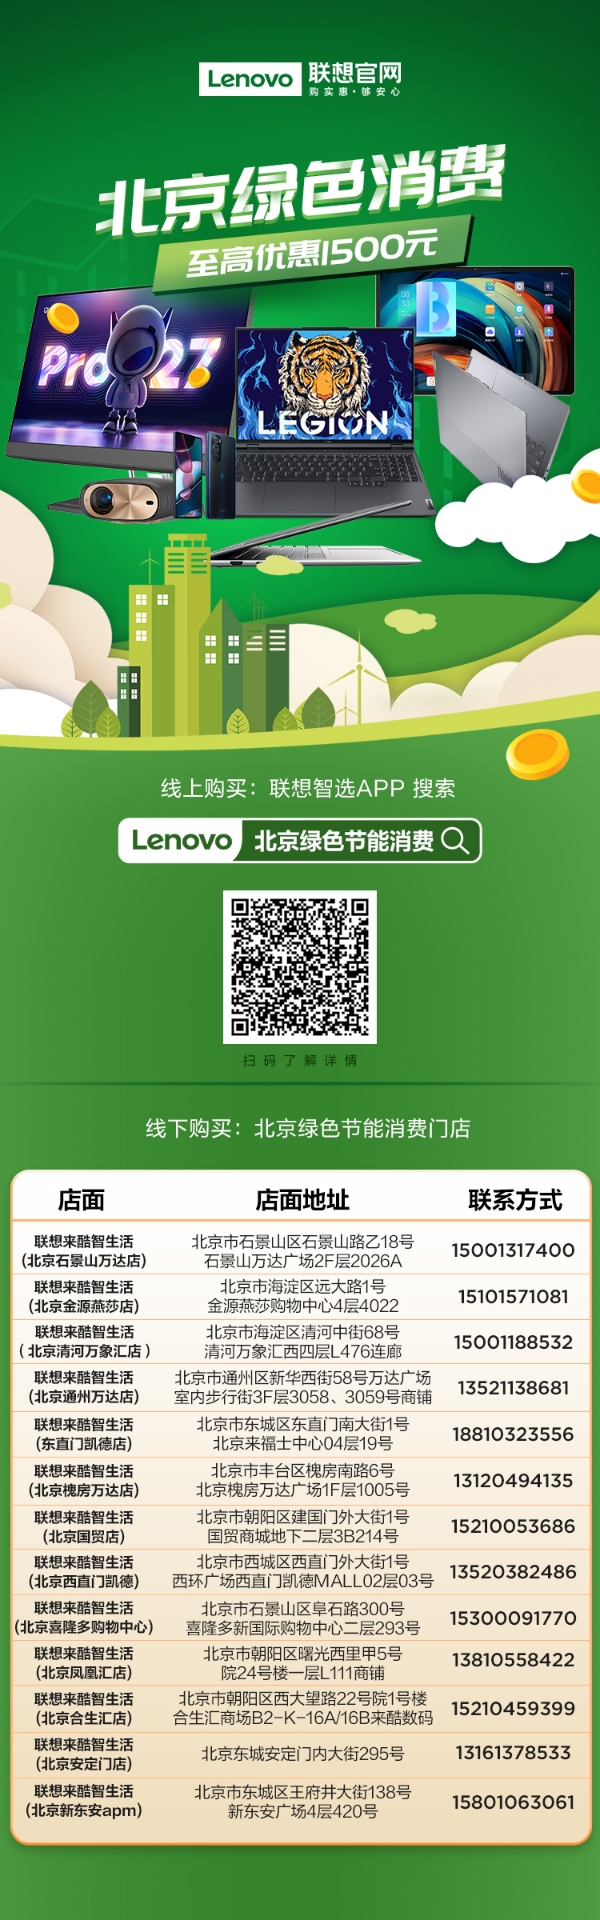 联想官网上线北京绿色节能消费券，至高优惠1500元